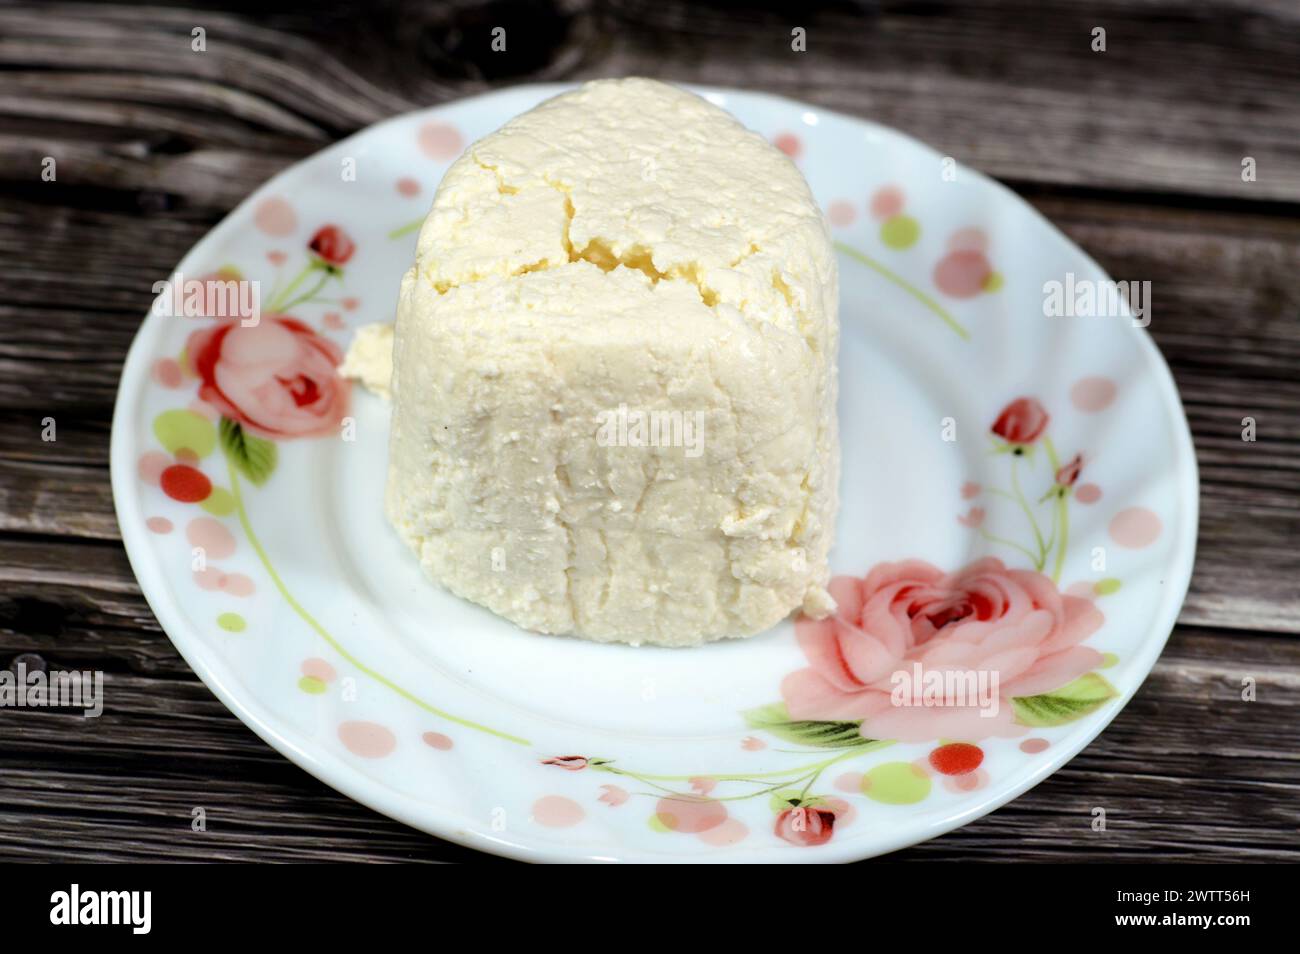 Arish Qarish fromage blanc égyptien, type de fromage blanc, mou, lactique fabriqué à partir de laban rayeb qui est un type de lait écrémé caillé et fermenté fait i Banque D'Images